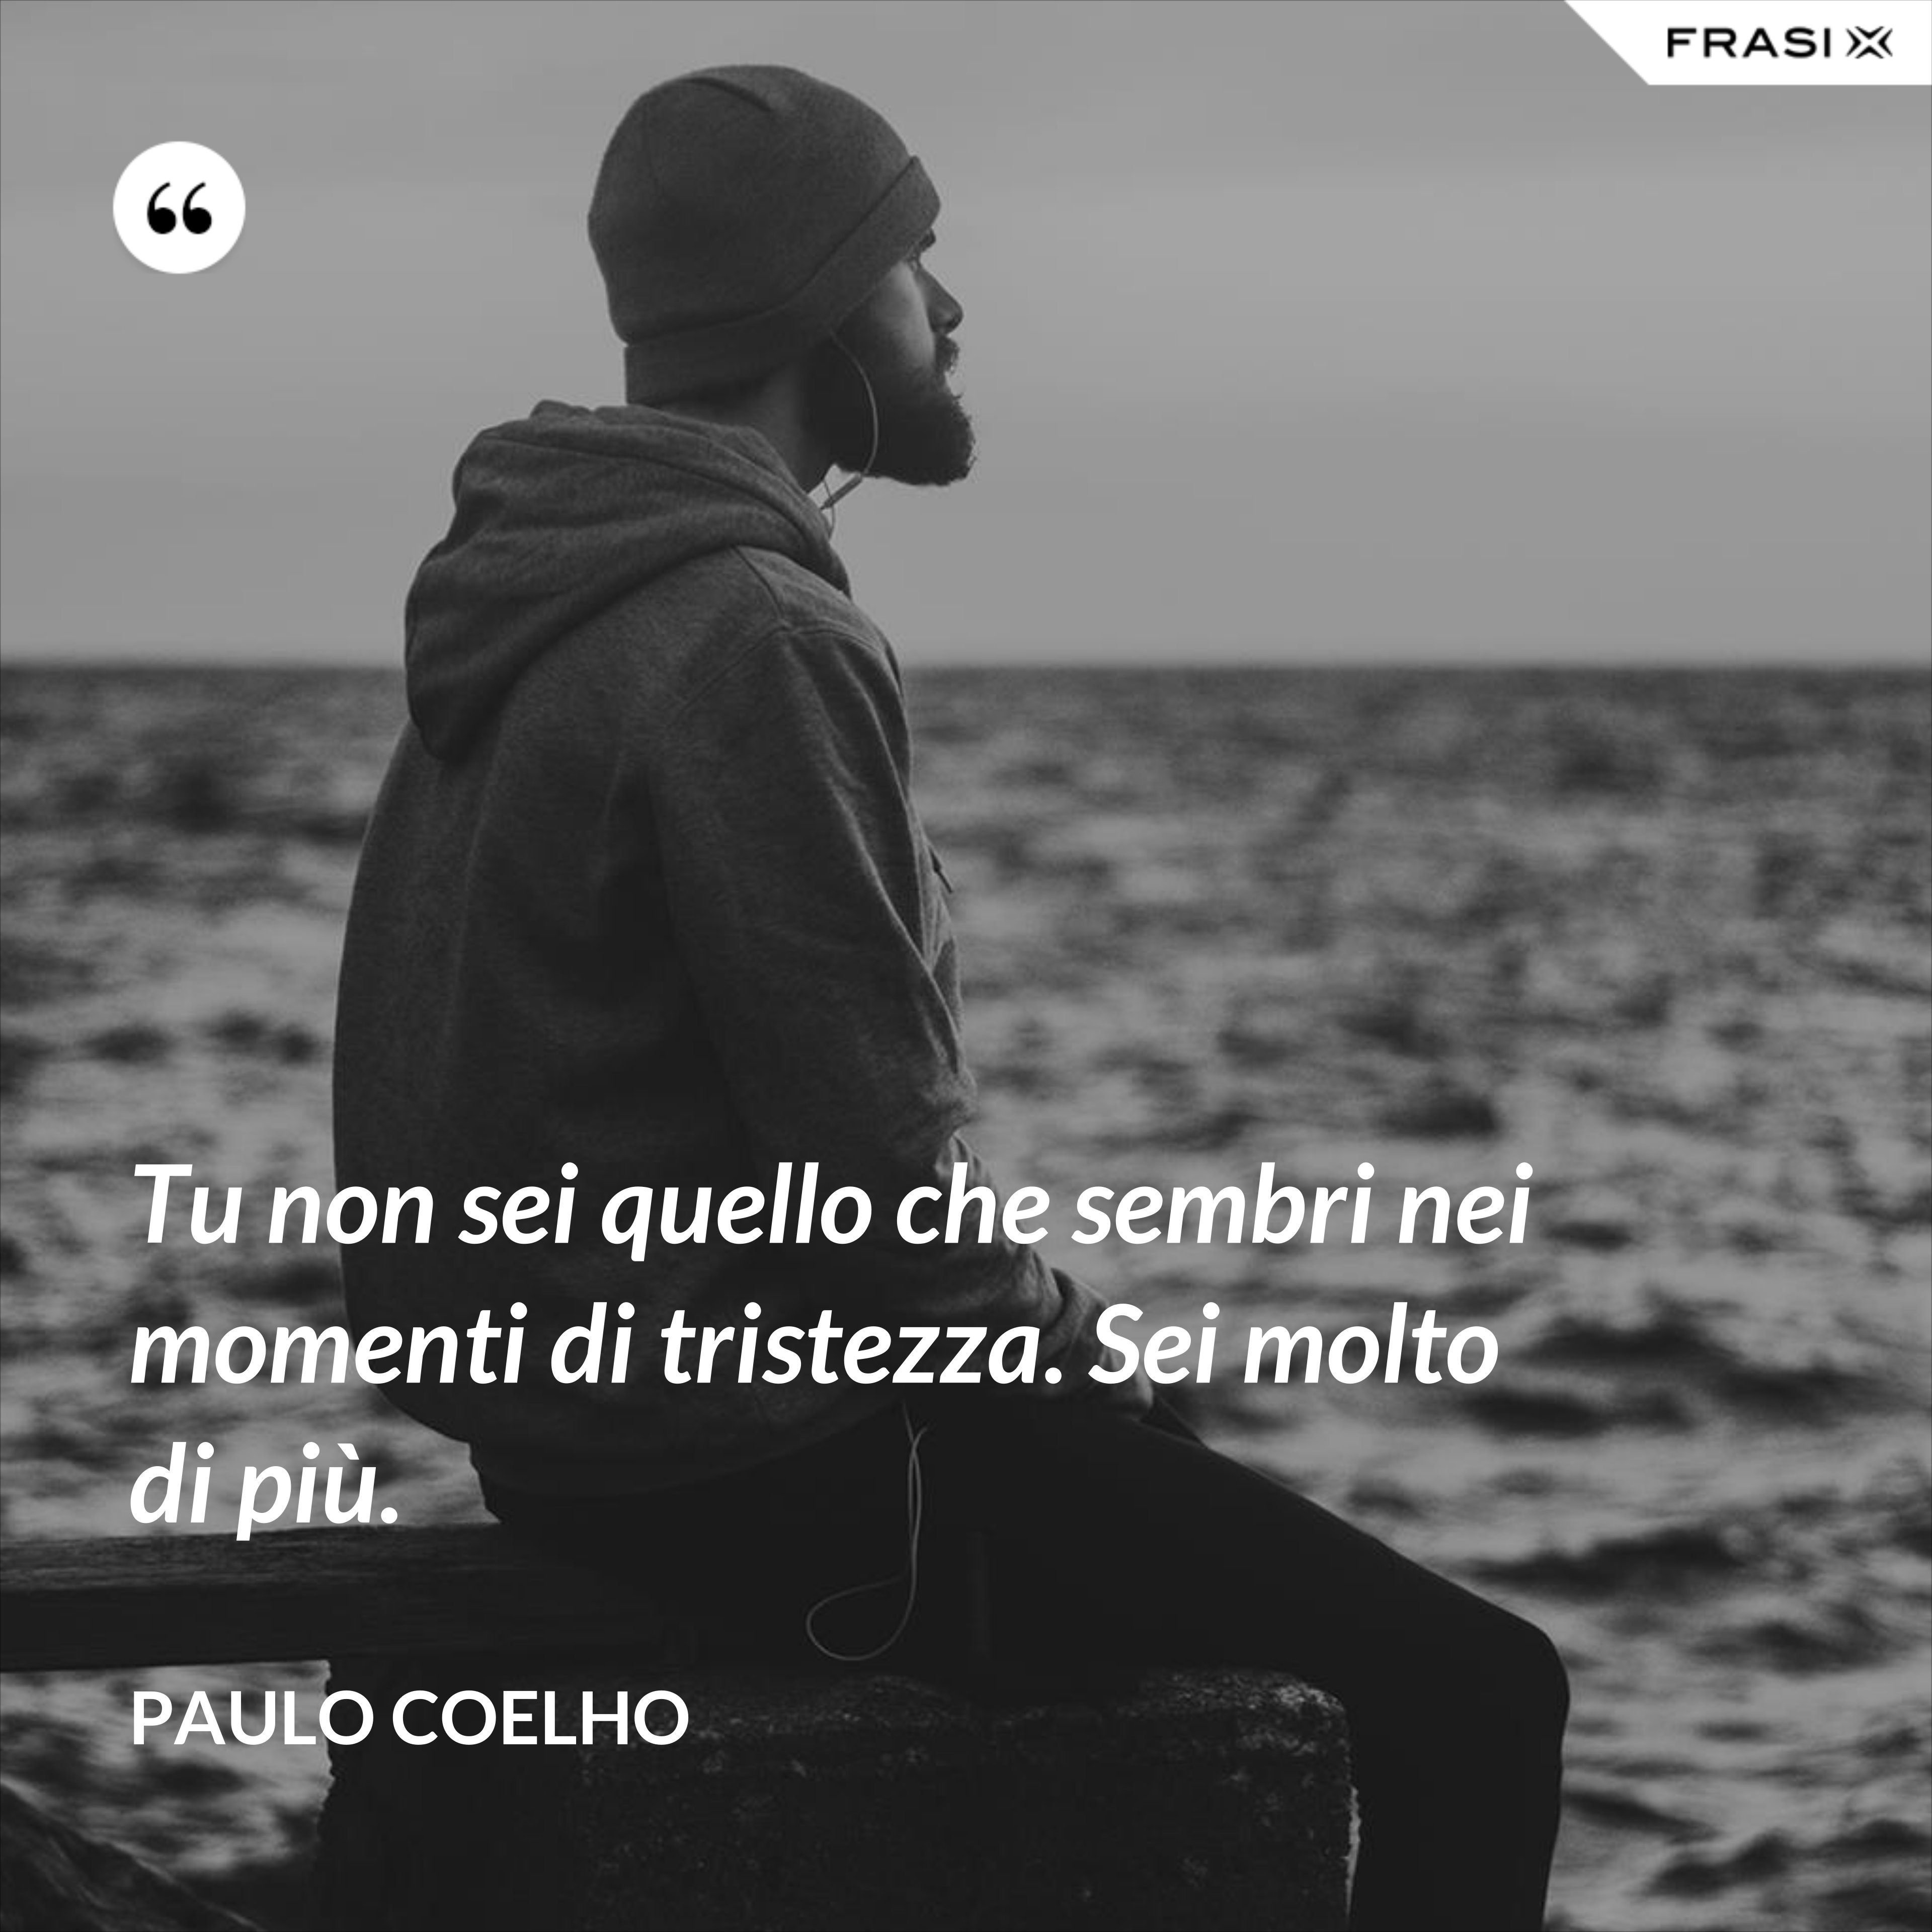 Tu non sei quello che sembri nei momenti di tristezza. Sei molto di più. - Paulo Coelho